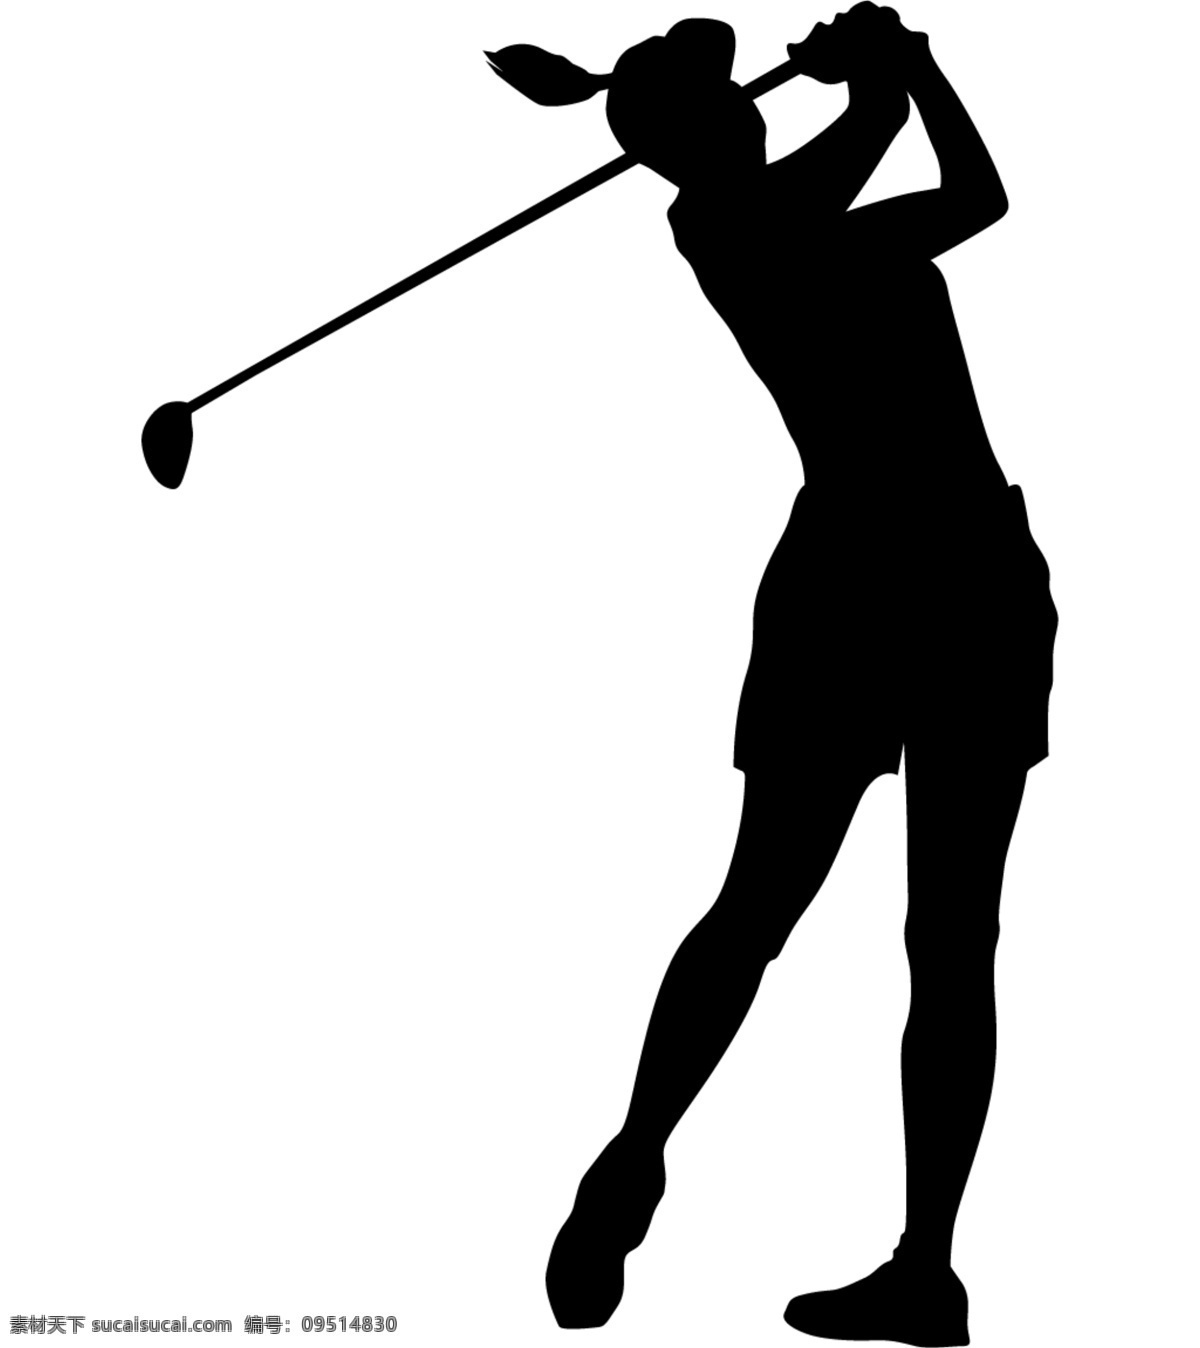 高尔夫 球运动 剪影 免 抠 透明 图形 元素 高尔夫图片 高尔夫球运动 高尔夫素材 高尔夫元素